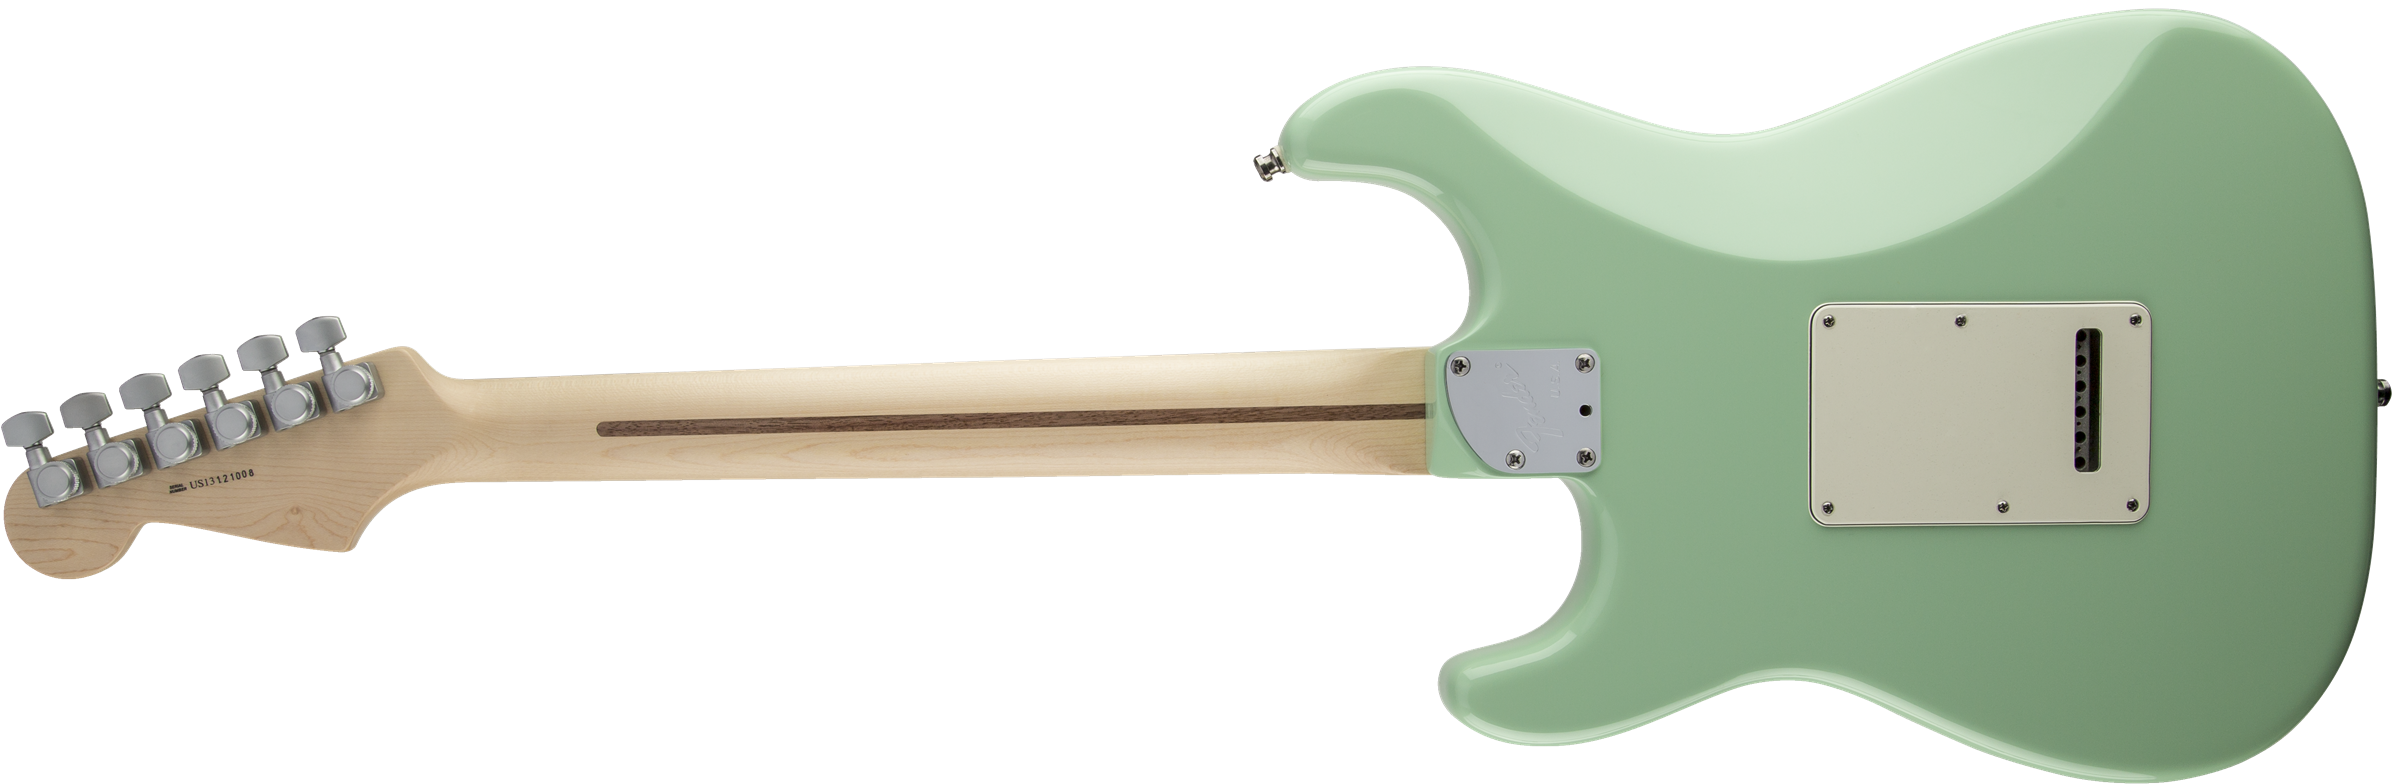 Fender Stratocaster Jeff Beck - Surf Green - E-Gitarre in Str-Form - Variation 1